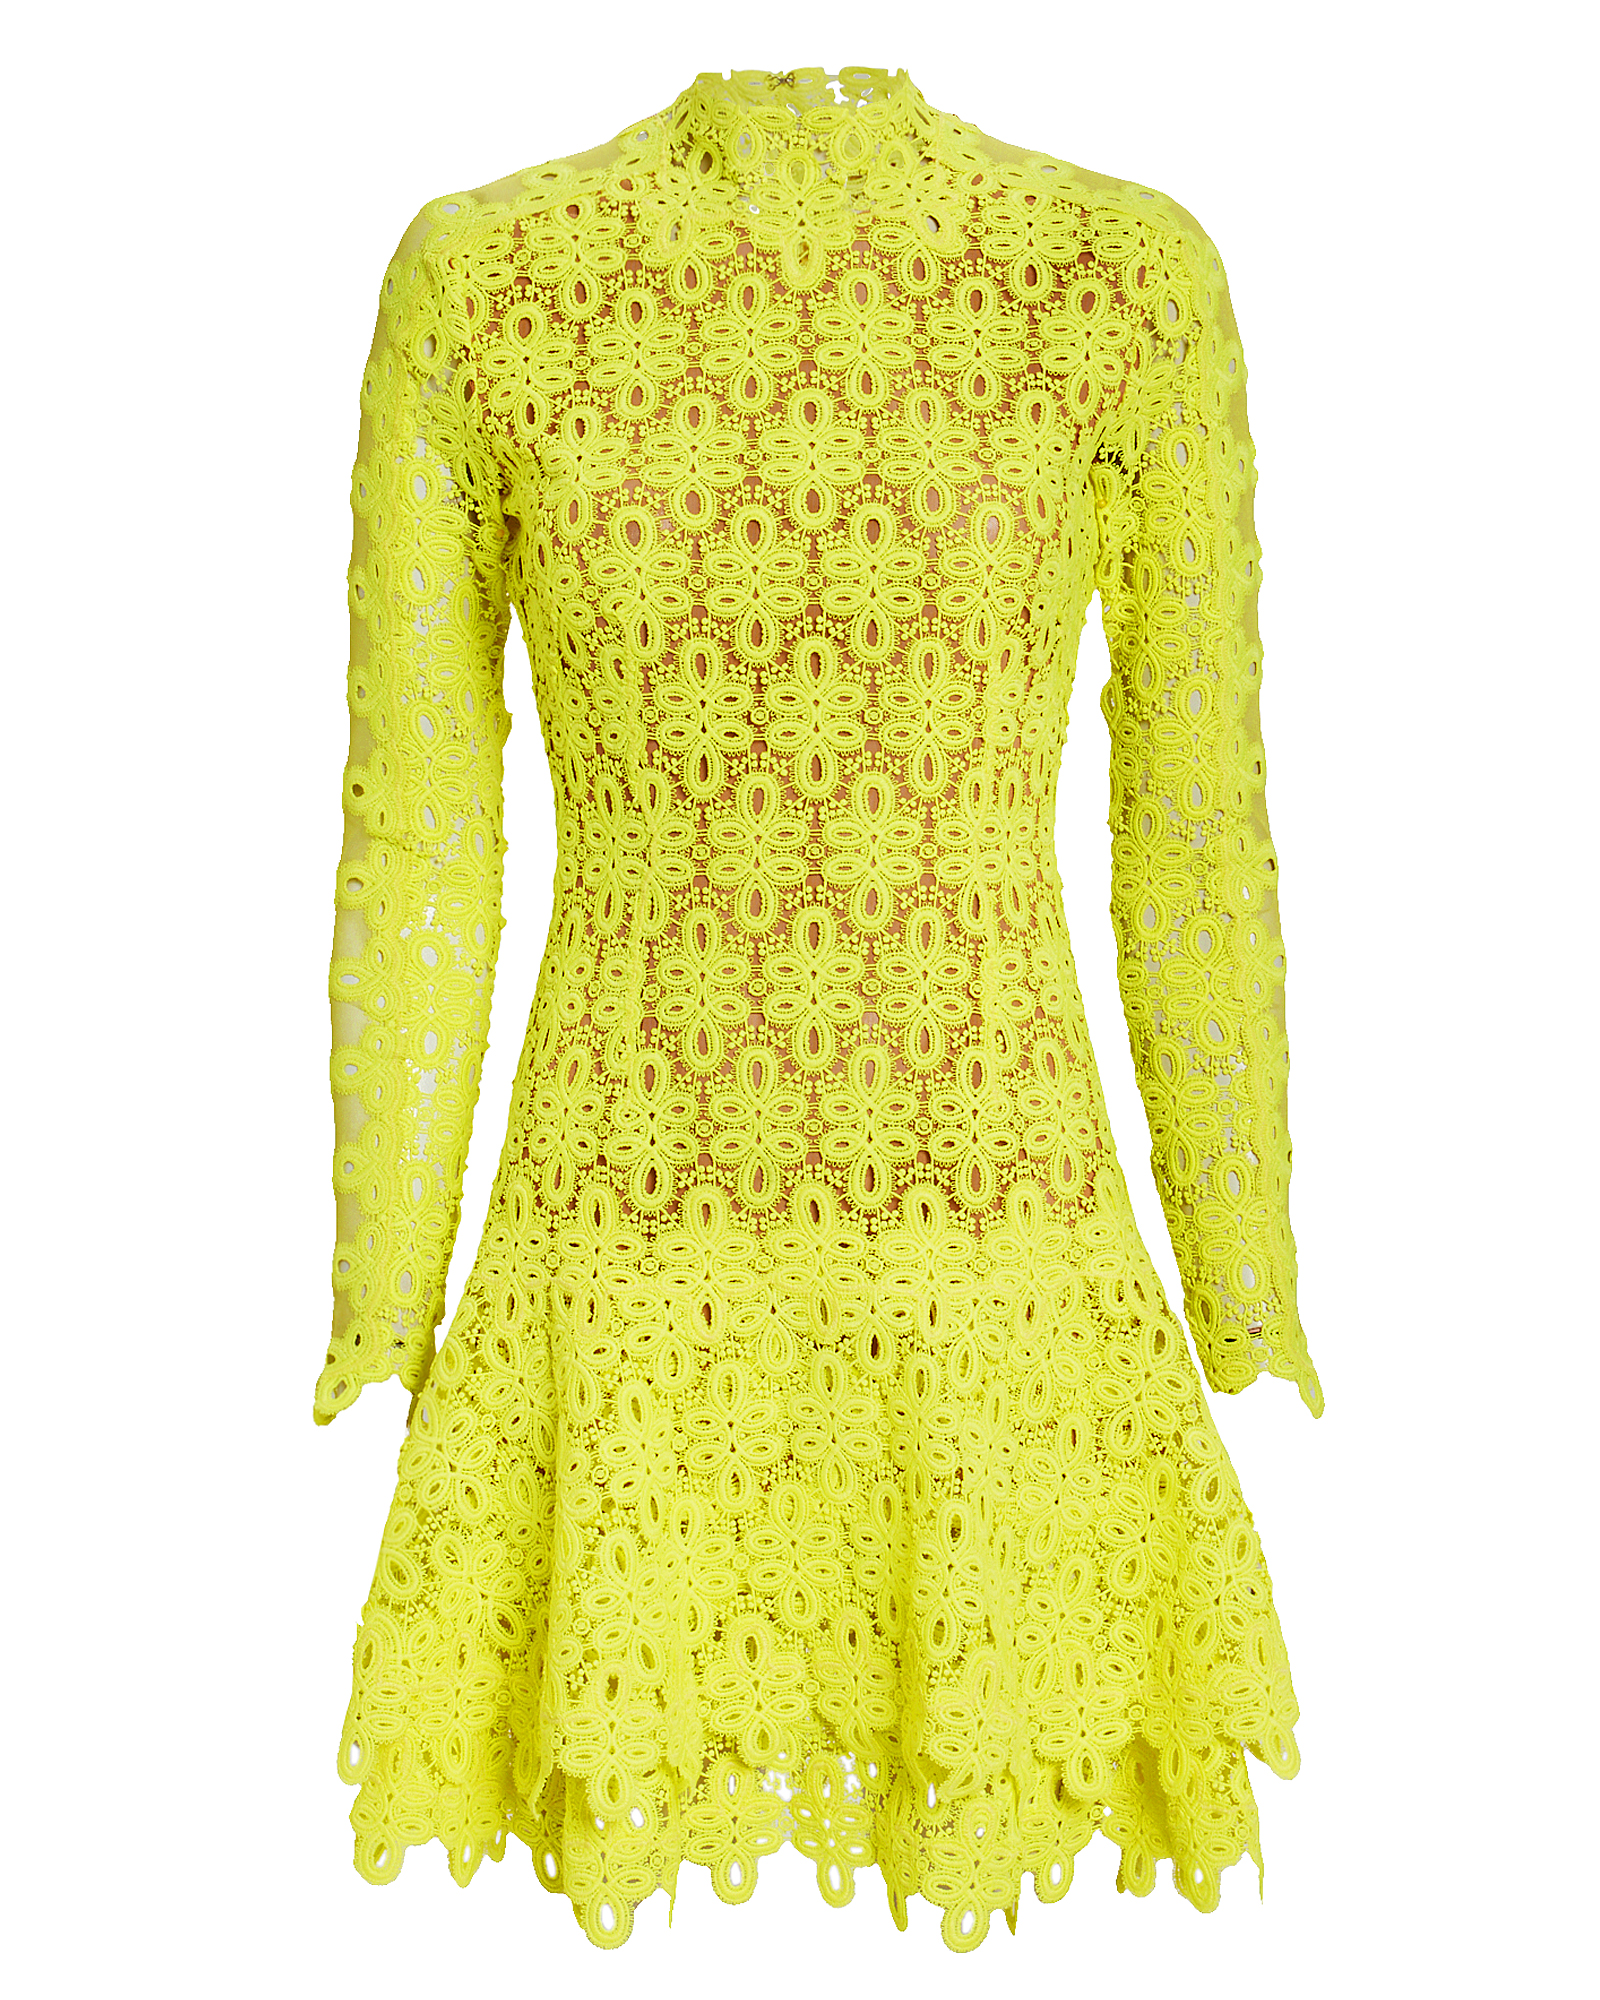 JONATHAN SIMKHAI Yellow Guipure Lace Mini Dress,Z1025-H